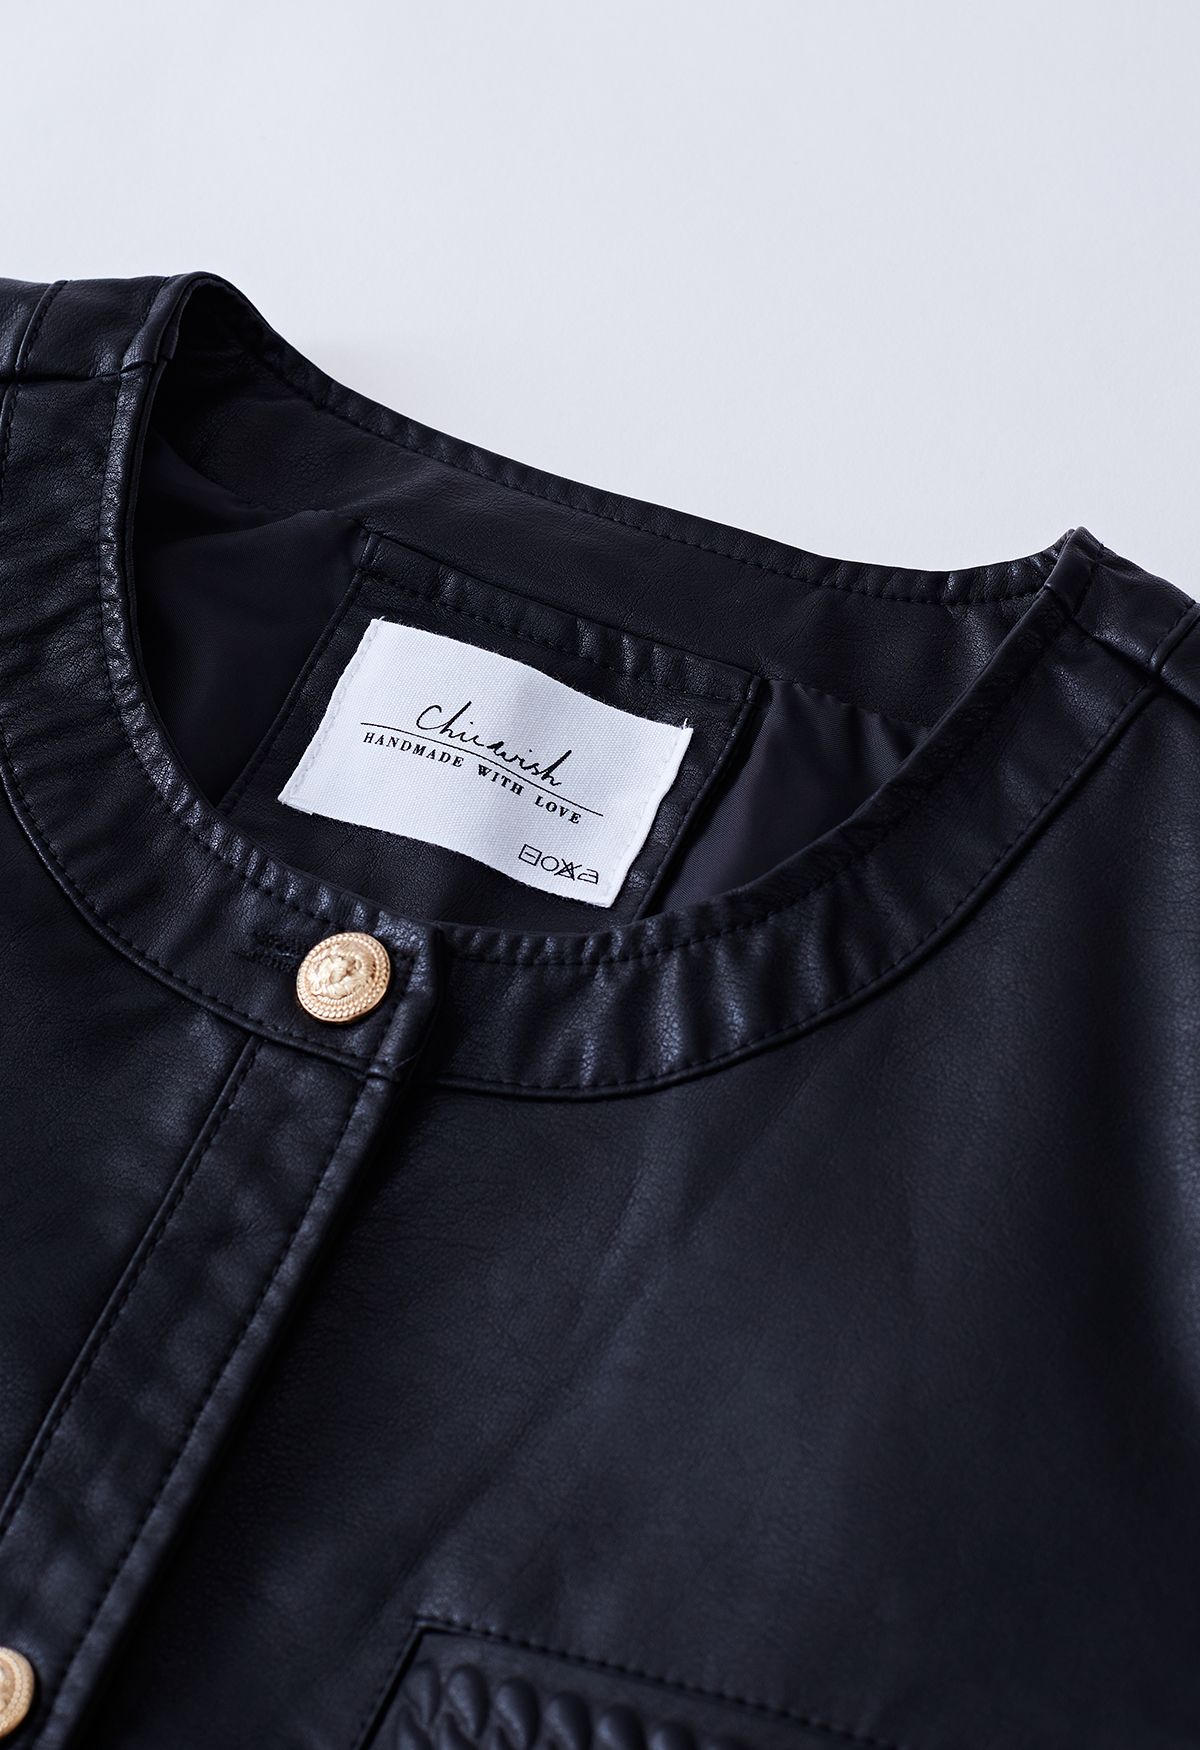 Jaqueta de couro falso com acabamento de bolso Welt em preto